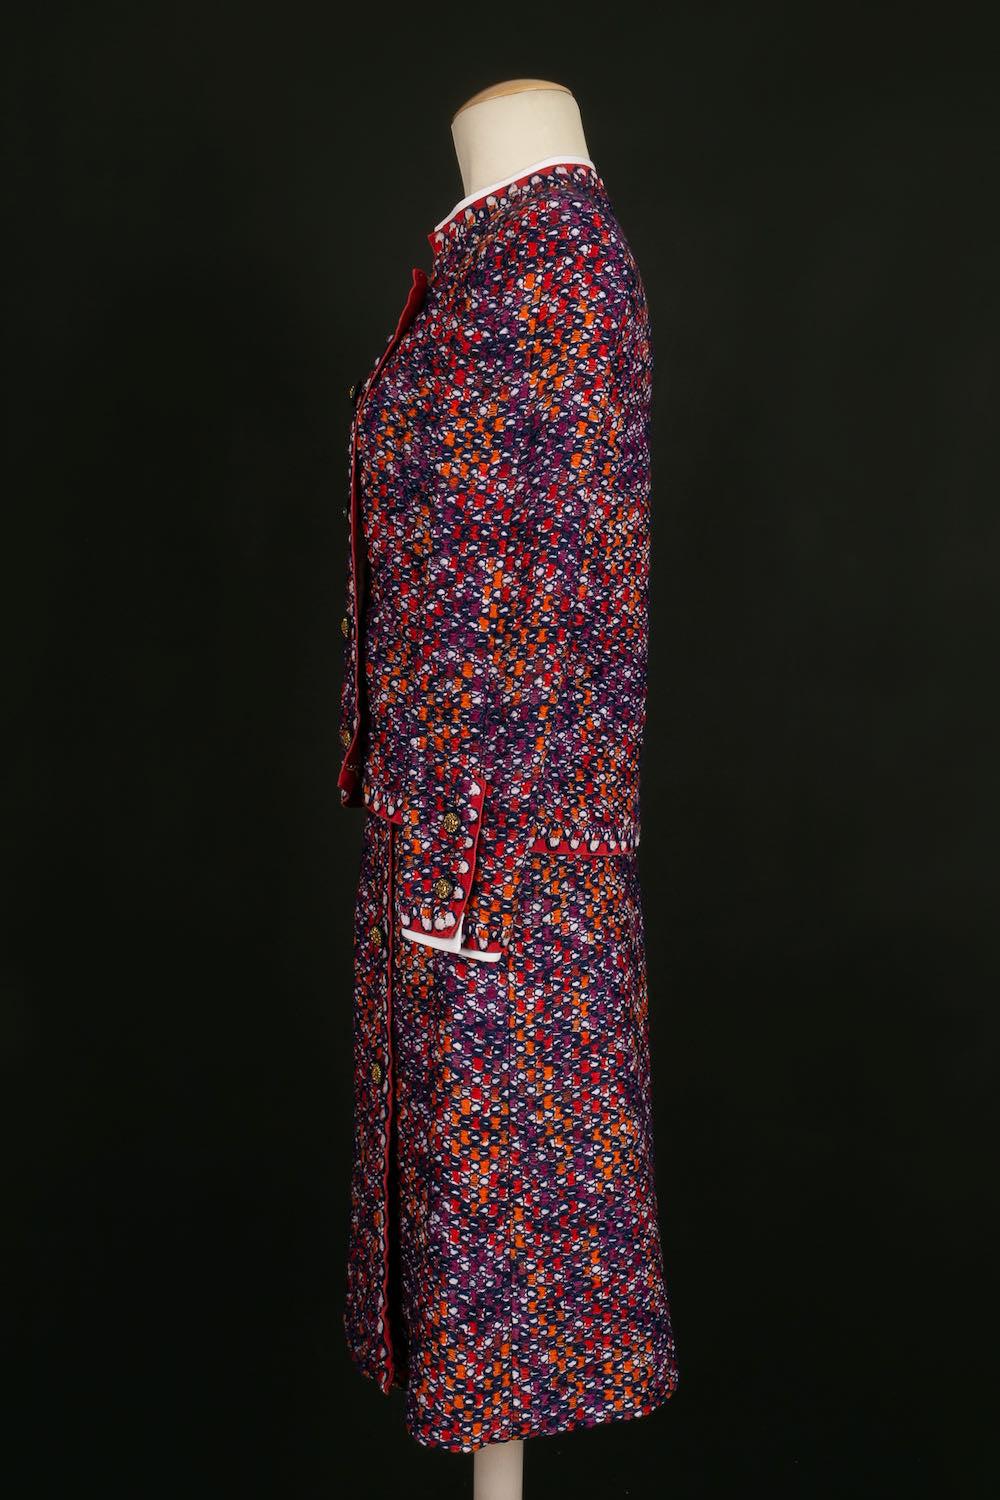 Chanel - Haute Couture Tweed-Rockanzug. Keine Größe oder Zusammensetzung Label, es passt eine Größe 36FR.

Zusätzliche Informationen: 
Abmessungen: Jacke: Schulterbreite: 36 cm, Brustumfang: 44 cm, Ärmellänge: 55 cm, Länge: 51 cm 
Rock: Taille: 36